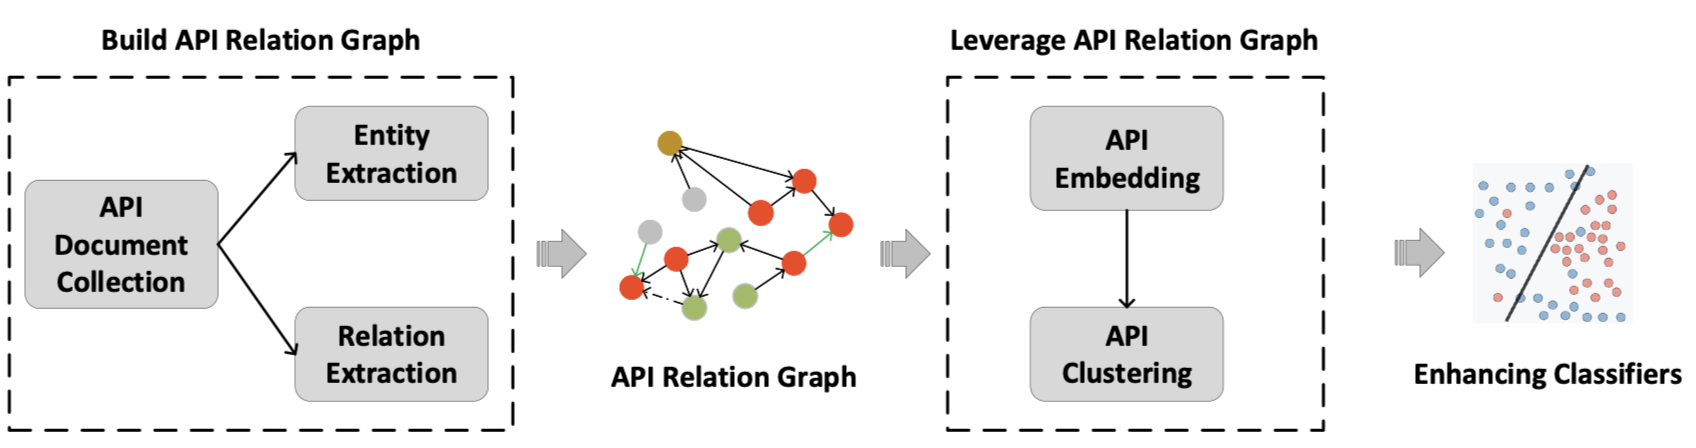 APIGraph 总体结构图